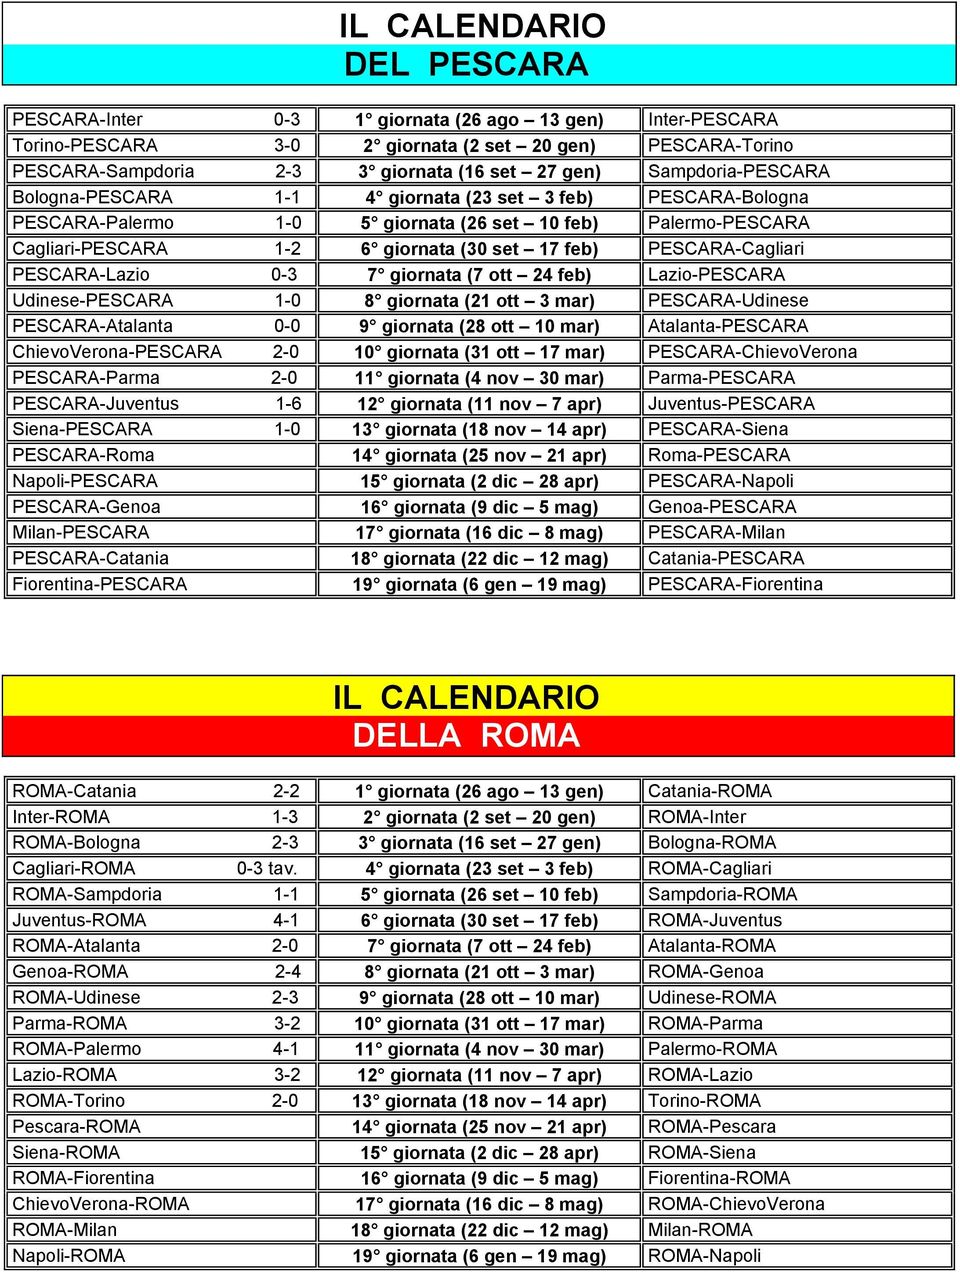 PESCARA-Cagliari PESCARA-Lazio -3 7 giornata (7 ott 24 feb) Lazio-PESCARA Udinese-PESCARA 1-8 giornata (21 ott 3 mar) PESCARA-Udinese PESCARA-Atalanta - 9 giornata (28 ott 1 mar) Atalanta-PESCARA